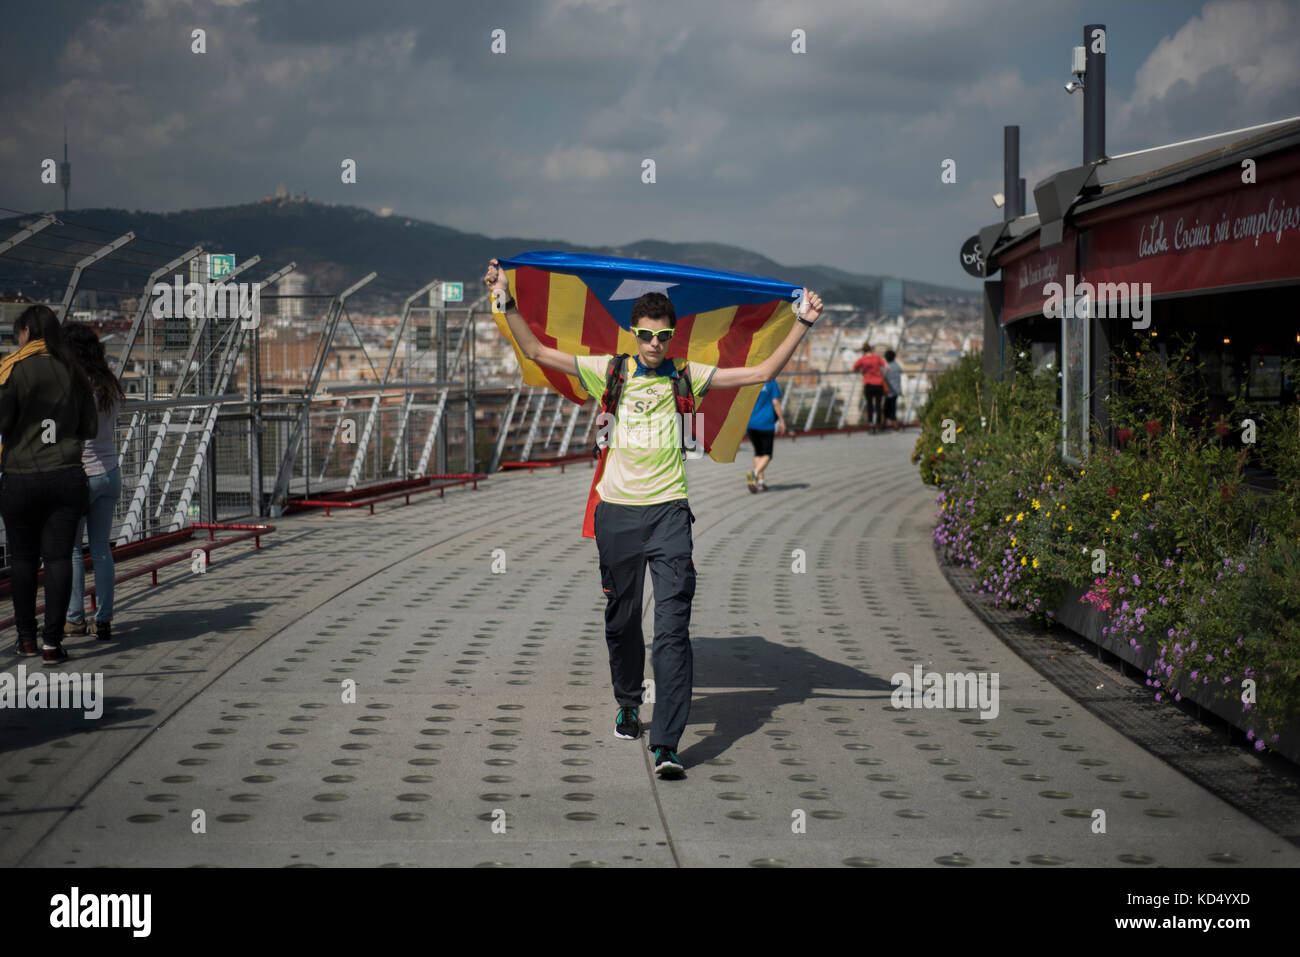 Un activiste de l'indépendance détient un drapeau d'indépendance catalan sur sa tête à Plaça d'Espanya (place de l'Espagne), Barcelone. Crédit: Alamy / Carles Desfilis Banque D'Images